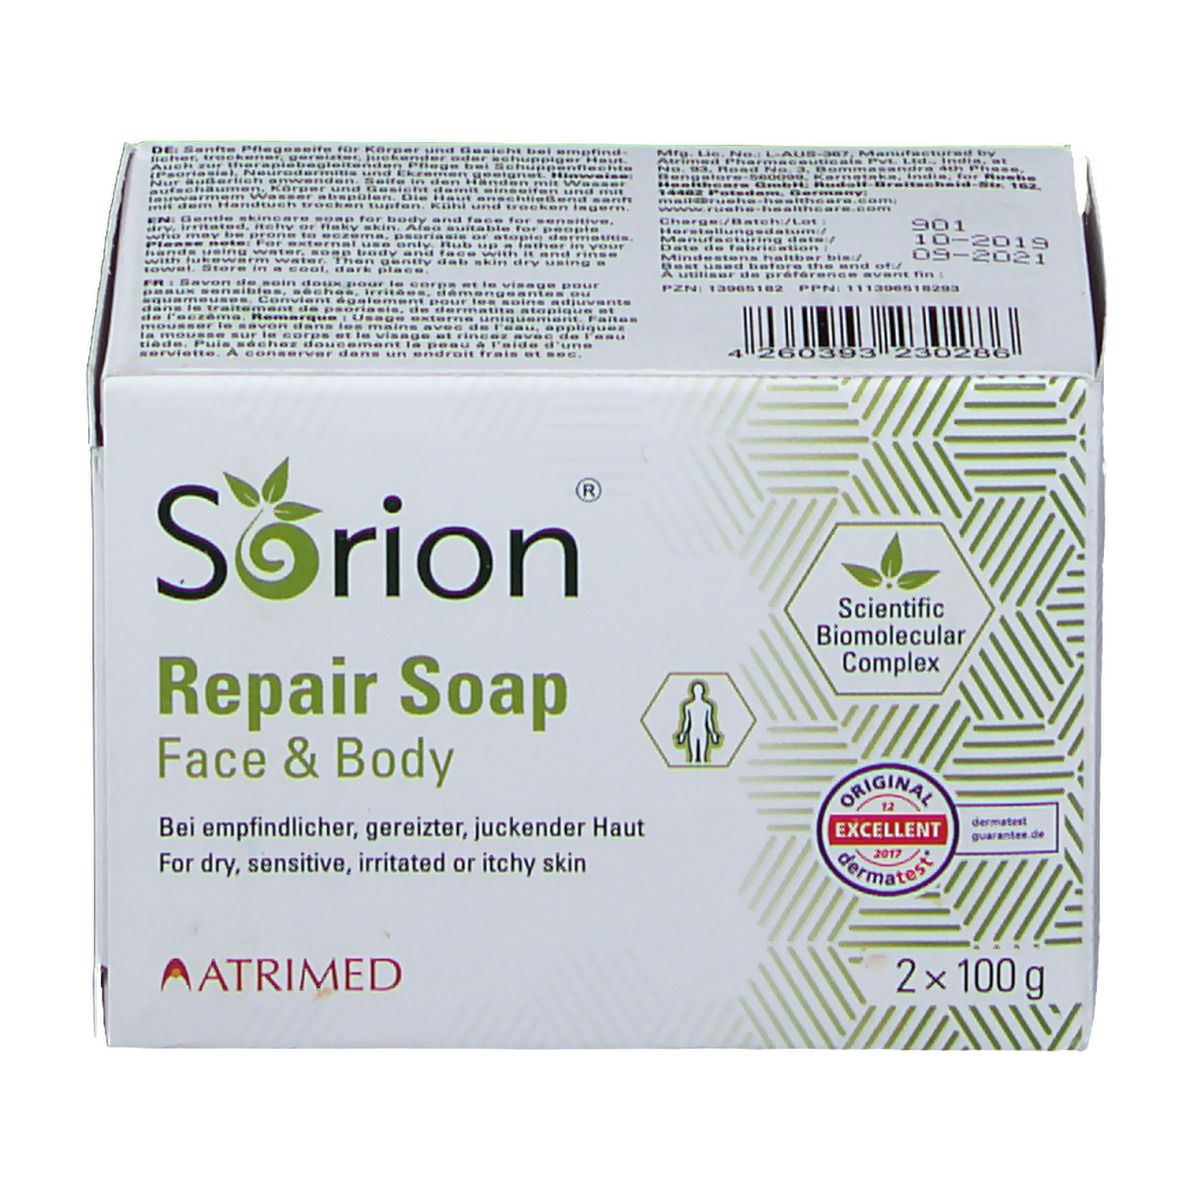 SORION ® Repair Soap